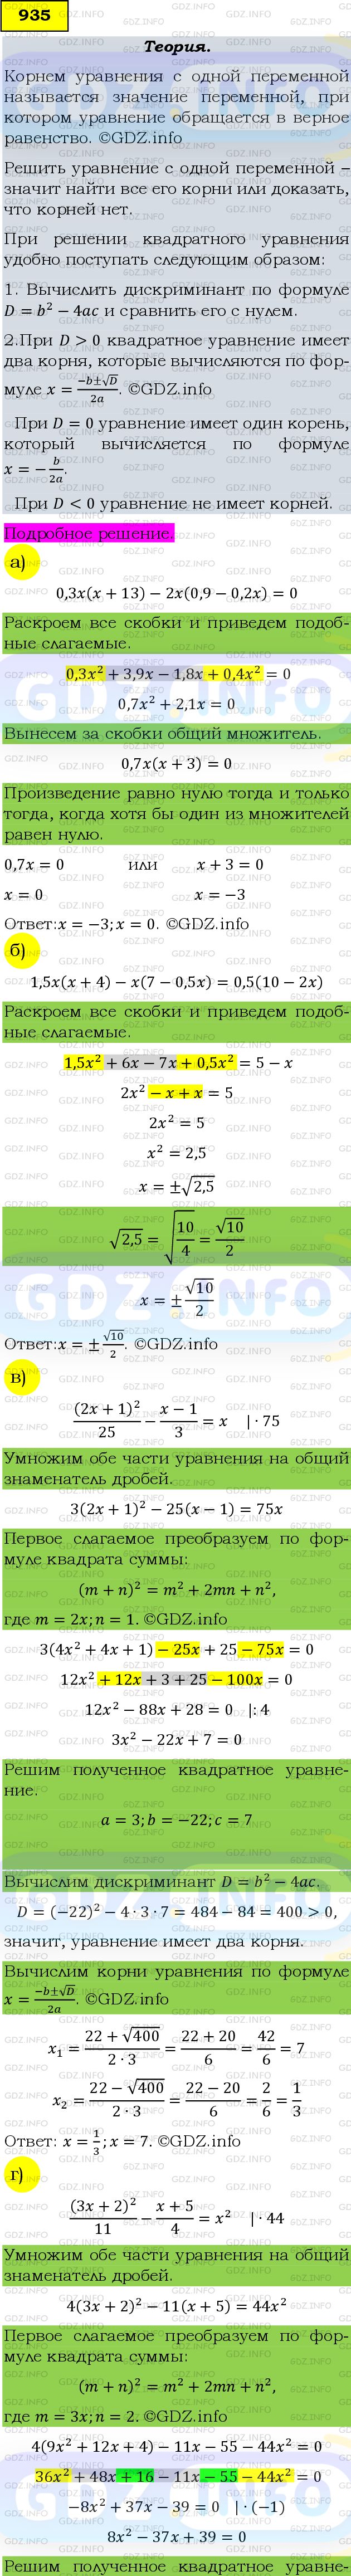 Фото подробного решения: Номер задания №935 из ГДЗ по Алгебре 9 класс: Макарычев Ю.Н.